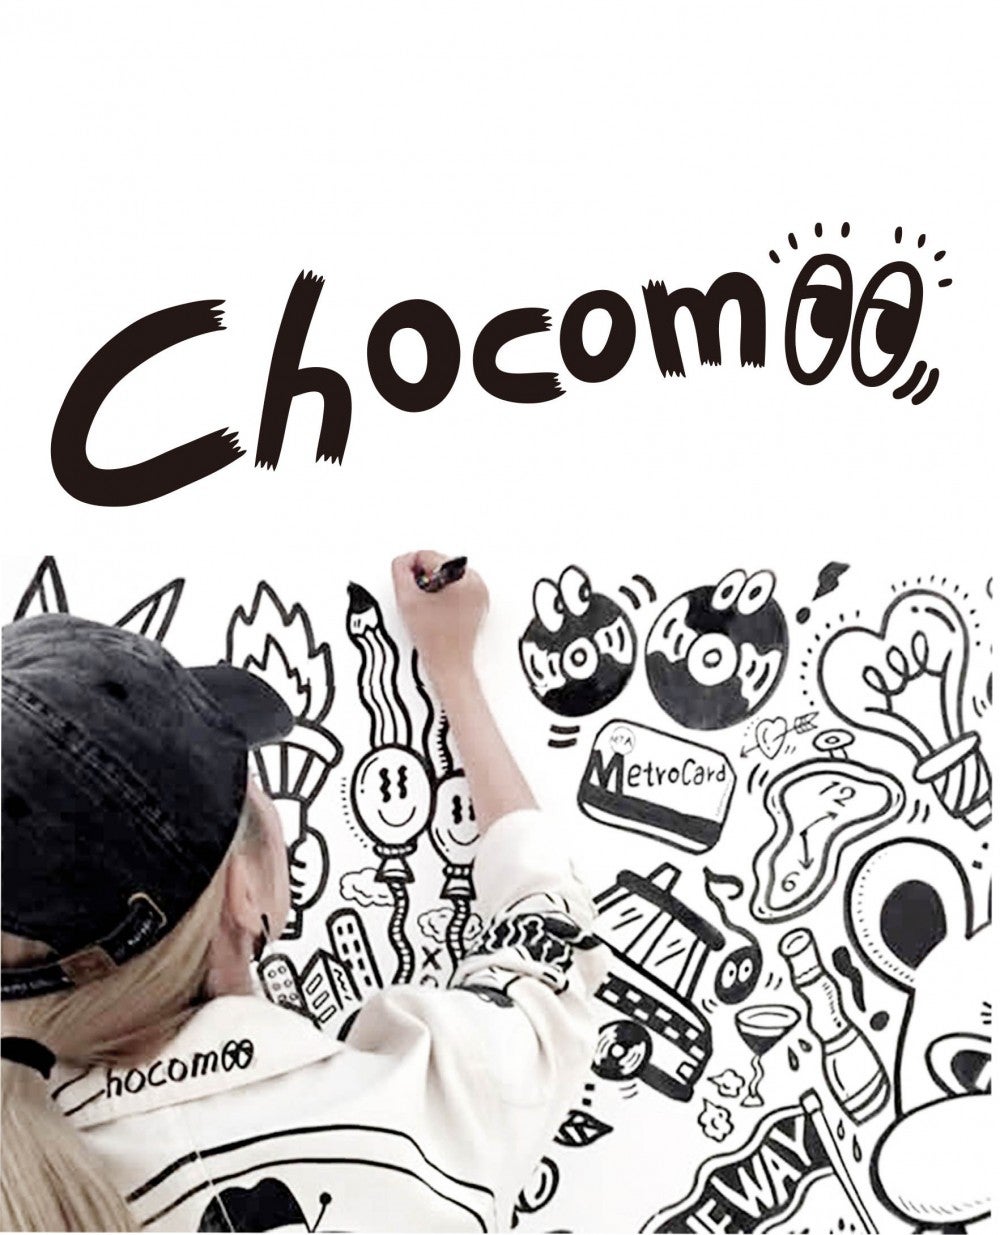 イラストレーターchocomooとコラボ 新コスメブランド Chocomoo Cosmetics 誕生 モデルプレス